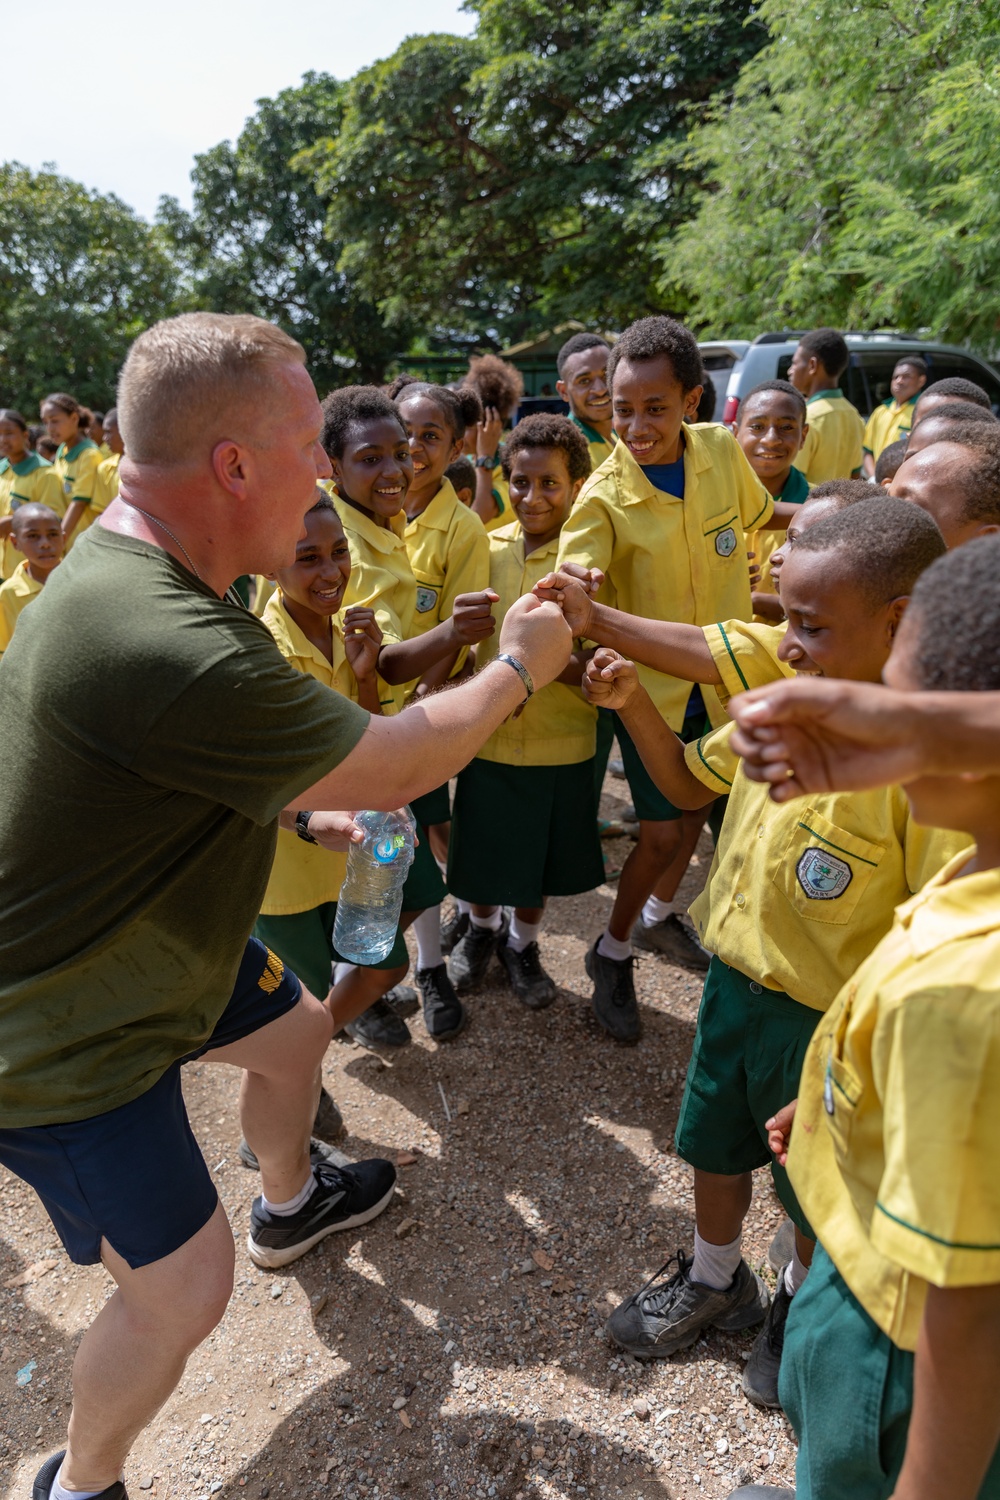 MRF-D 24.3: U.S. Marines, Sailors visit Papua New Guinea primary school during HADR exercise